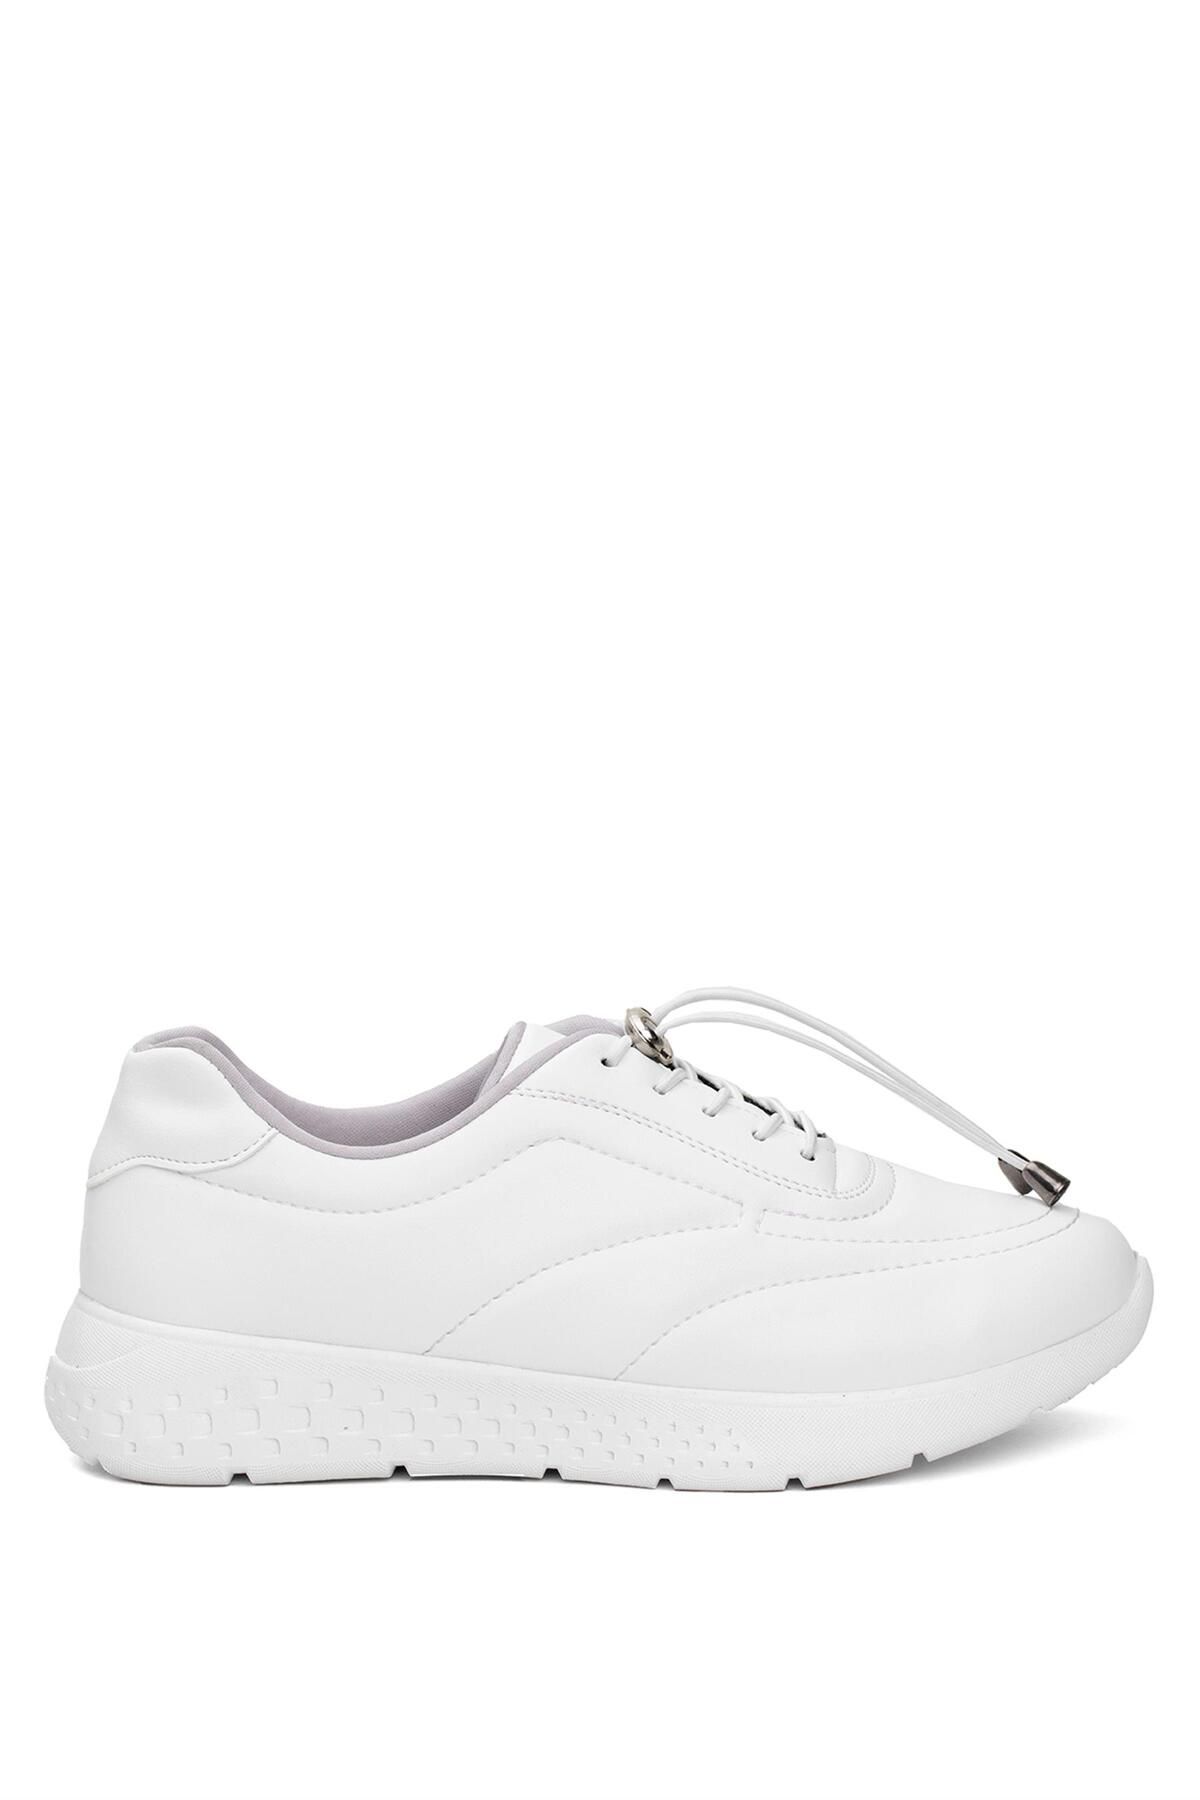 Ayakkabı Fuarı Elit Sis0020C Kadın Casual Ayakkabı Beyaz